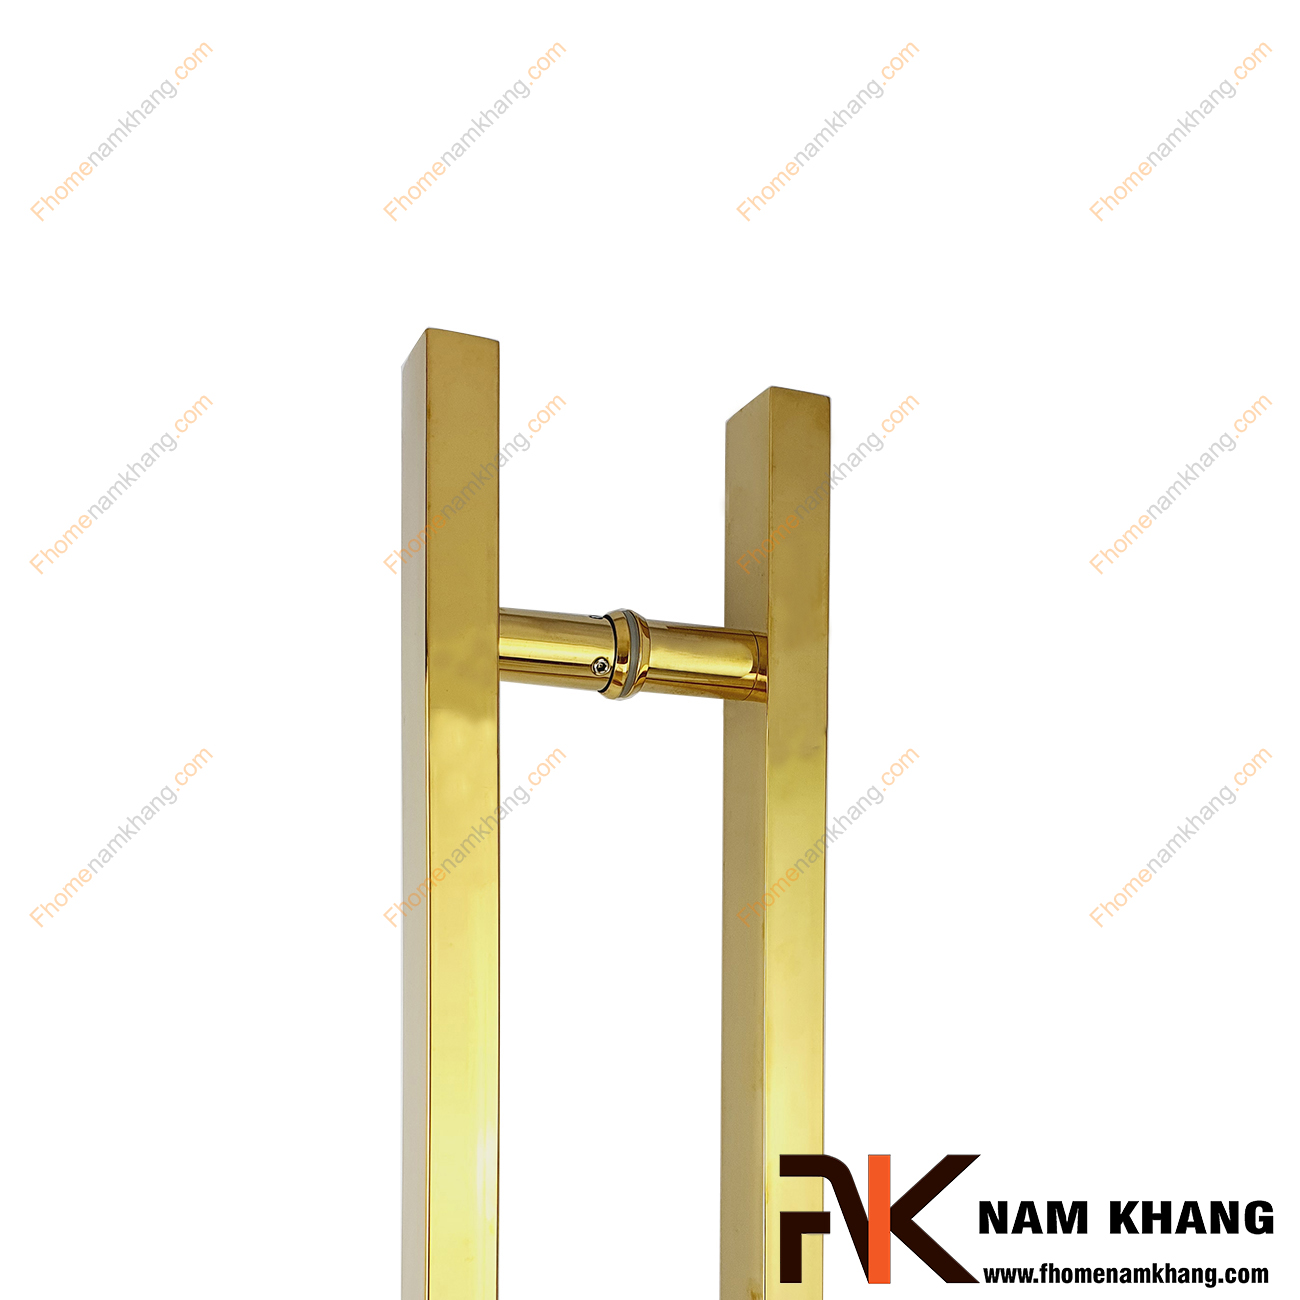 Tay nắm cửa chính màu vàng bóng dạng thanh vuông trơn NK900-V304 cao cấp sử dụng cho mọi loại cửa với nhiều chất liệu từ gỗ, kính, nhôm,...